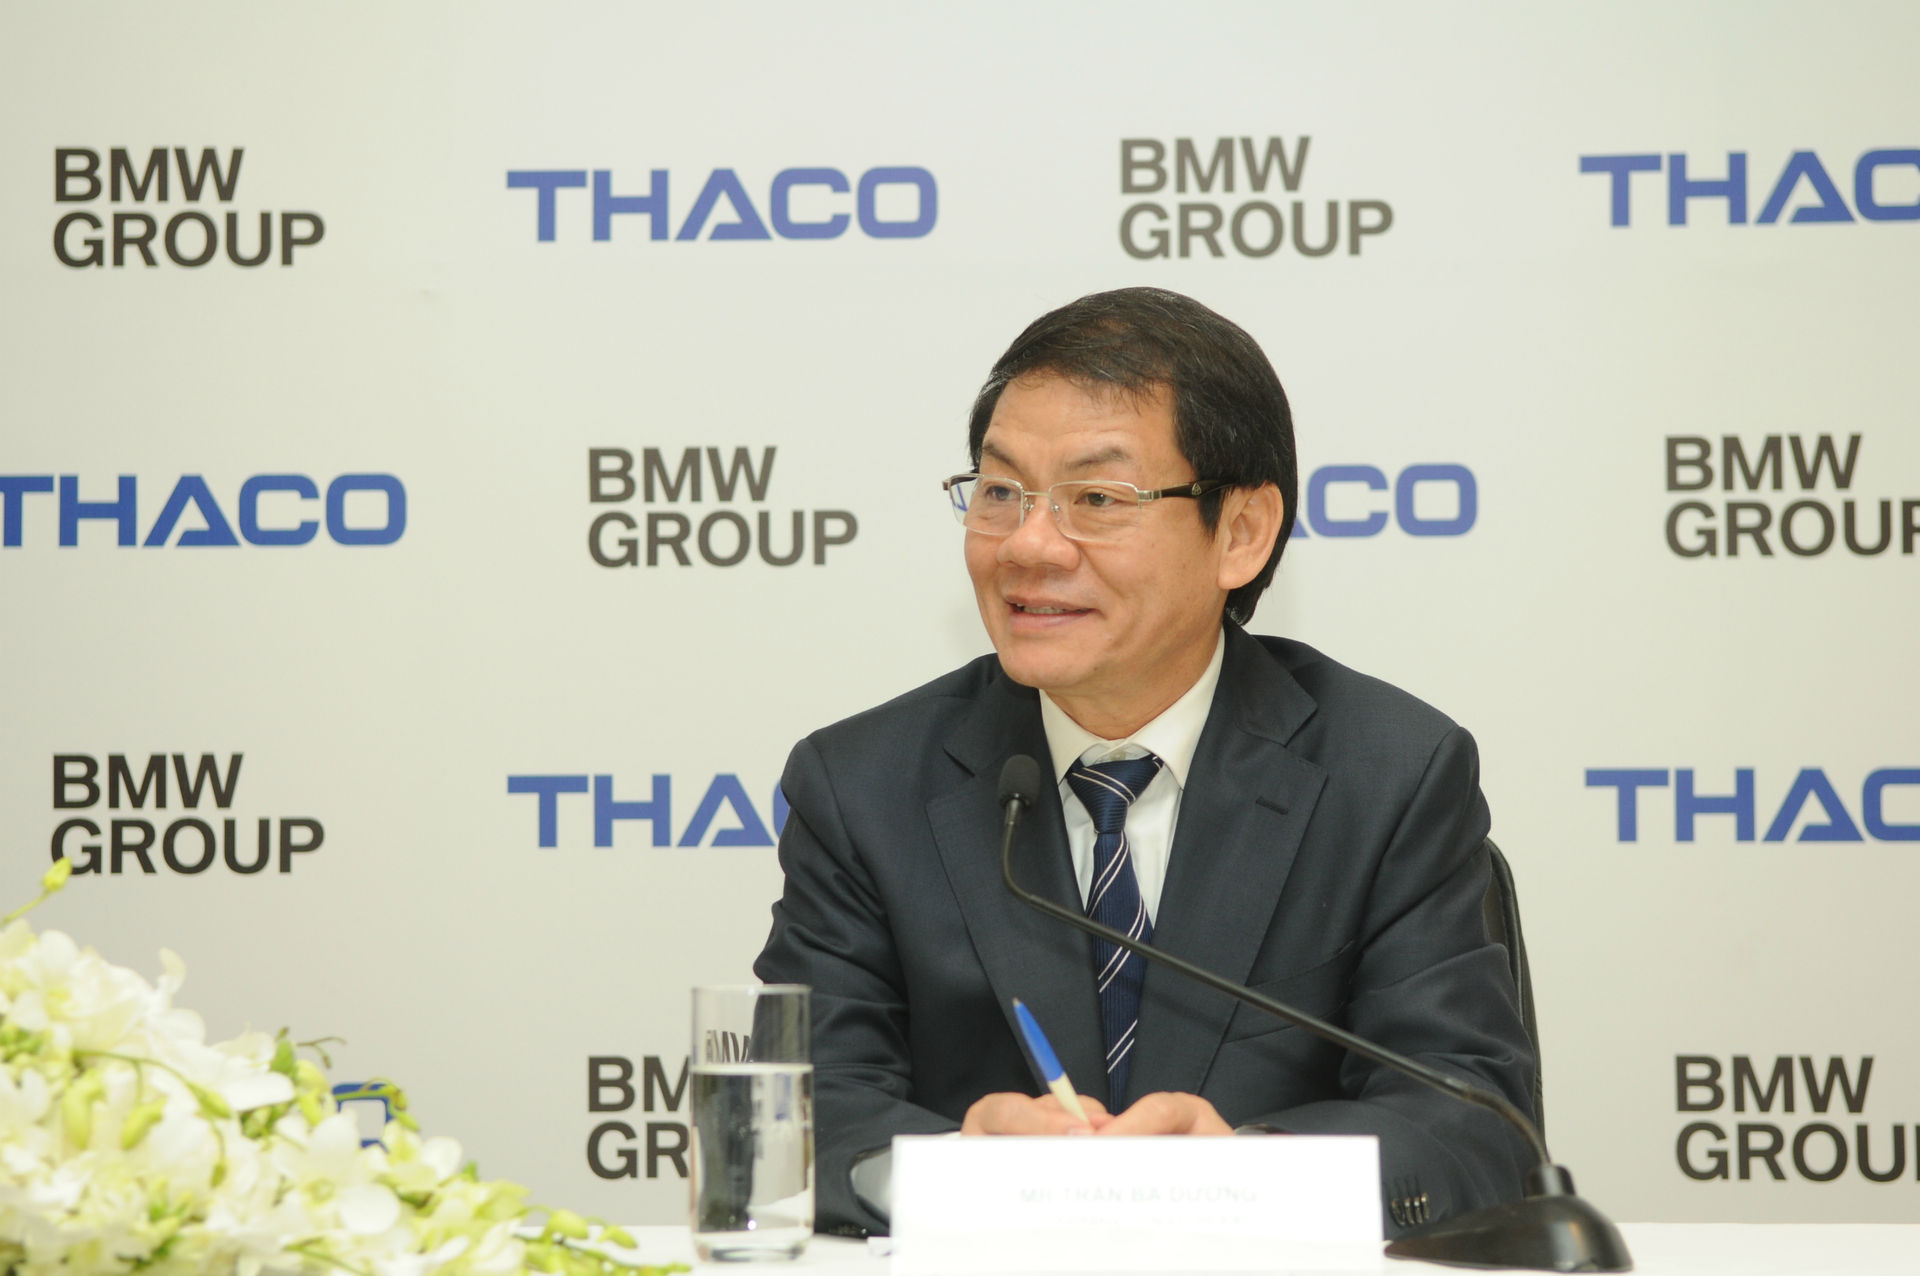 Ông Trần Bá Dương nói rằng, Thaco cam kết sẽ đem đến cho khách hàng những dịch vụ chuyên nghiệp và phù hợp với định vị của từng thương hiệu mà đơn vị này phân phối.